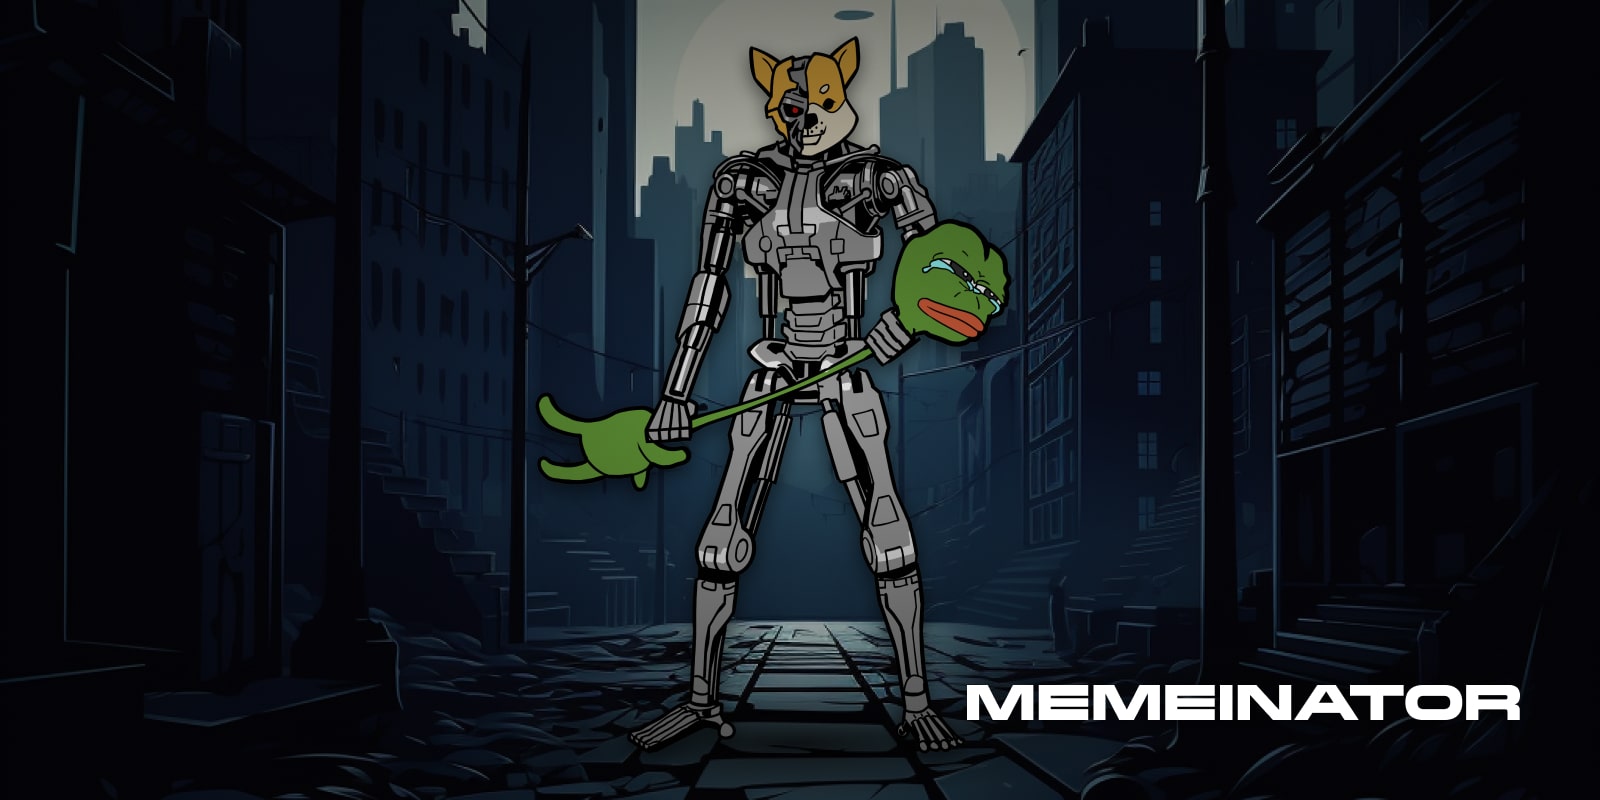 Neue Meme-Coins, Memeinator und Memeland liefern sich ein Kopf-an-Kopf-Rennen